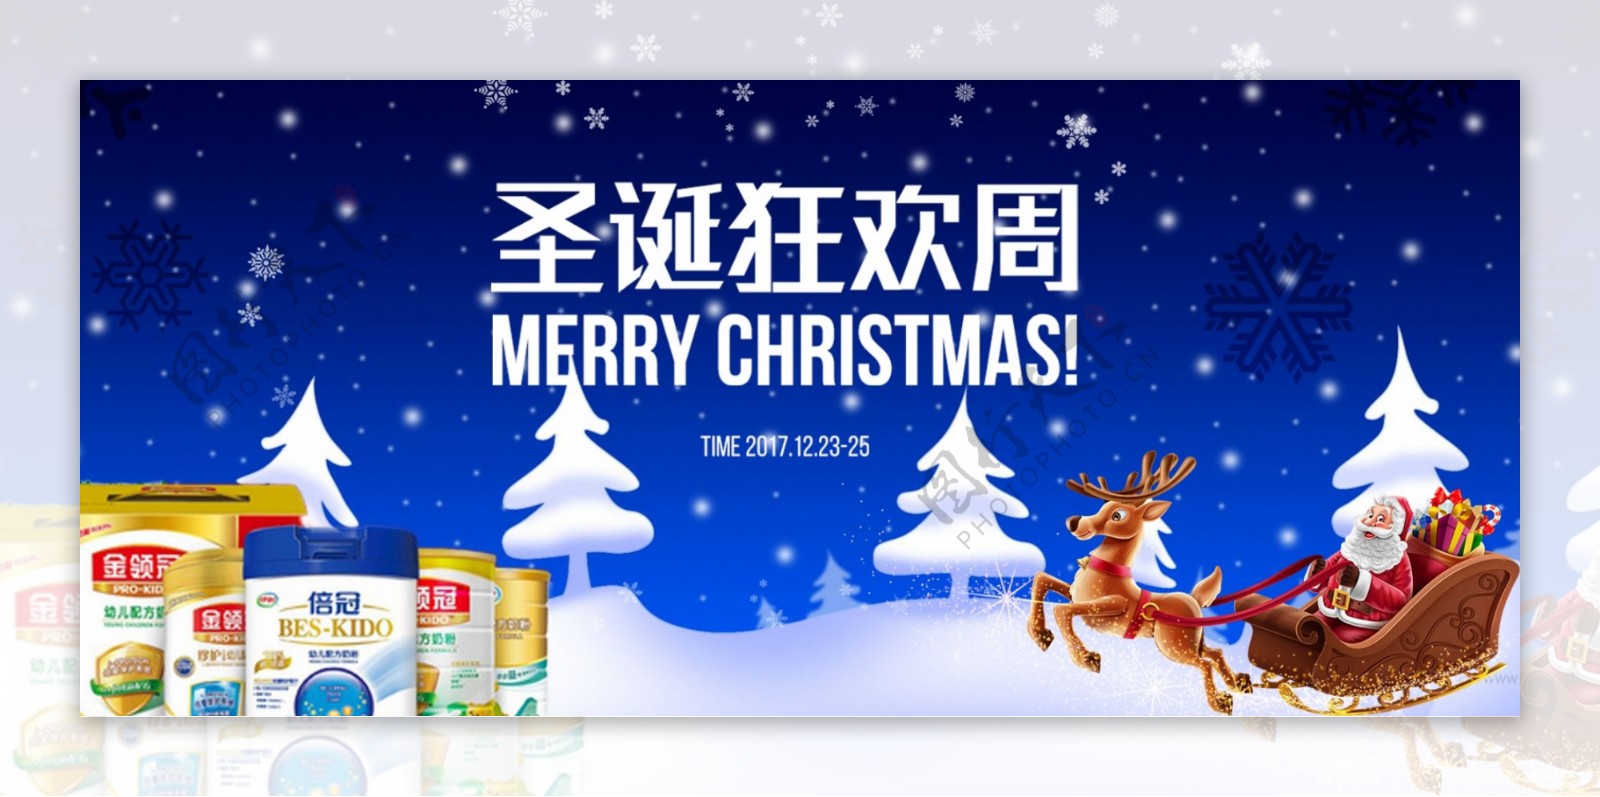 电商淘宝圣诞狂欢周圣诞节奶粉促销海报